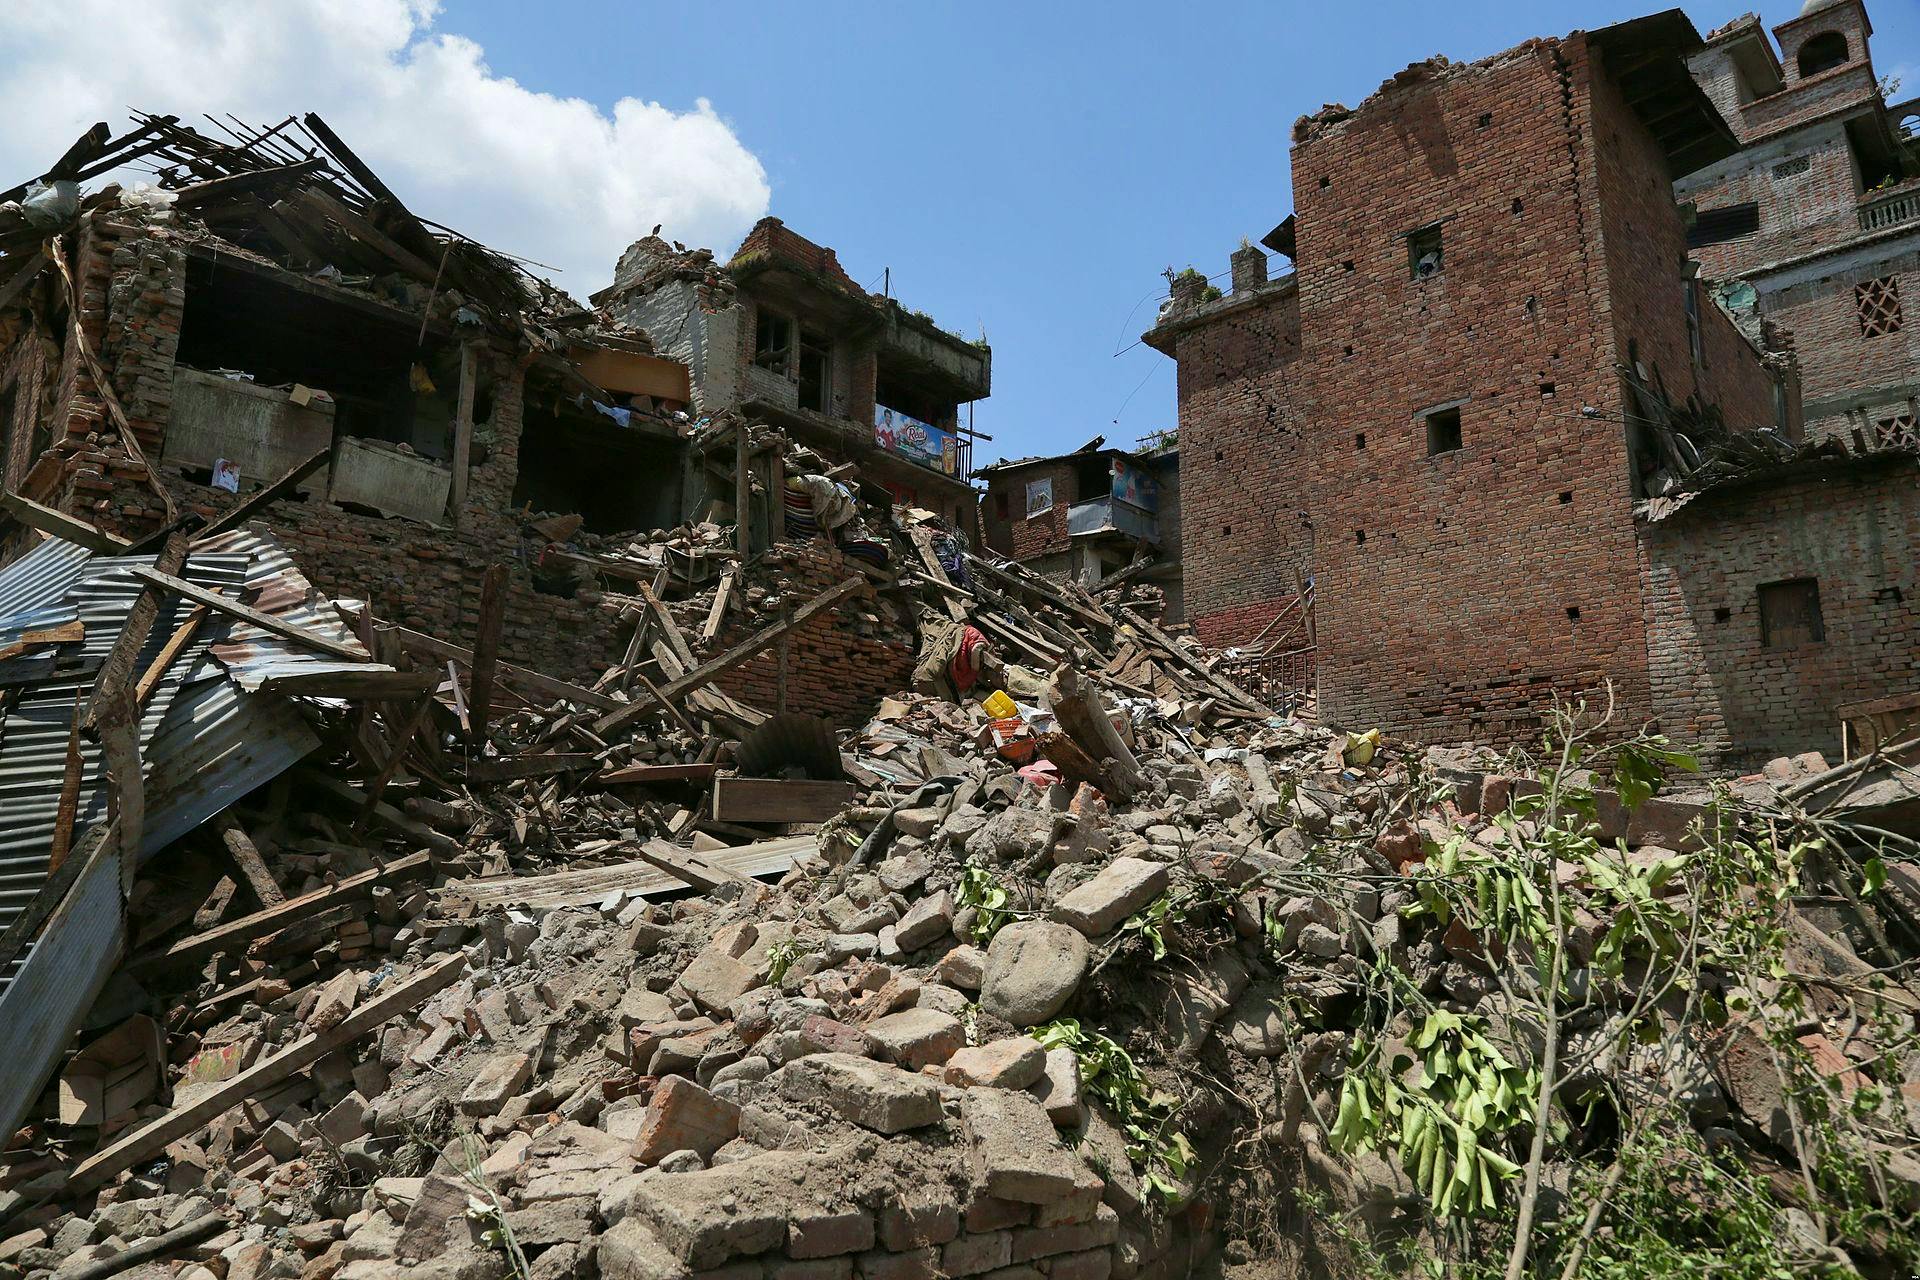 Damaged homes in Kathmandu after the April mainshock